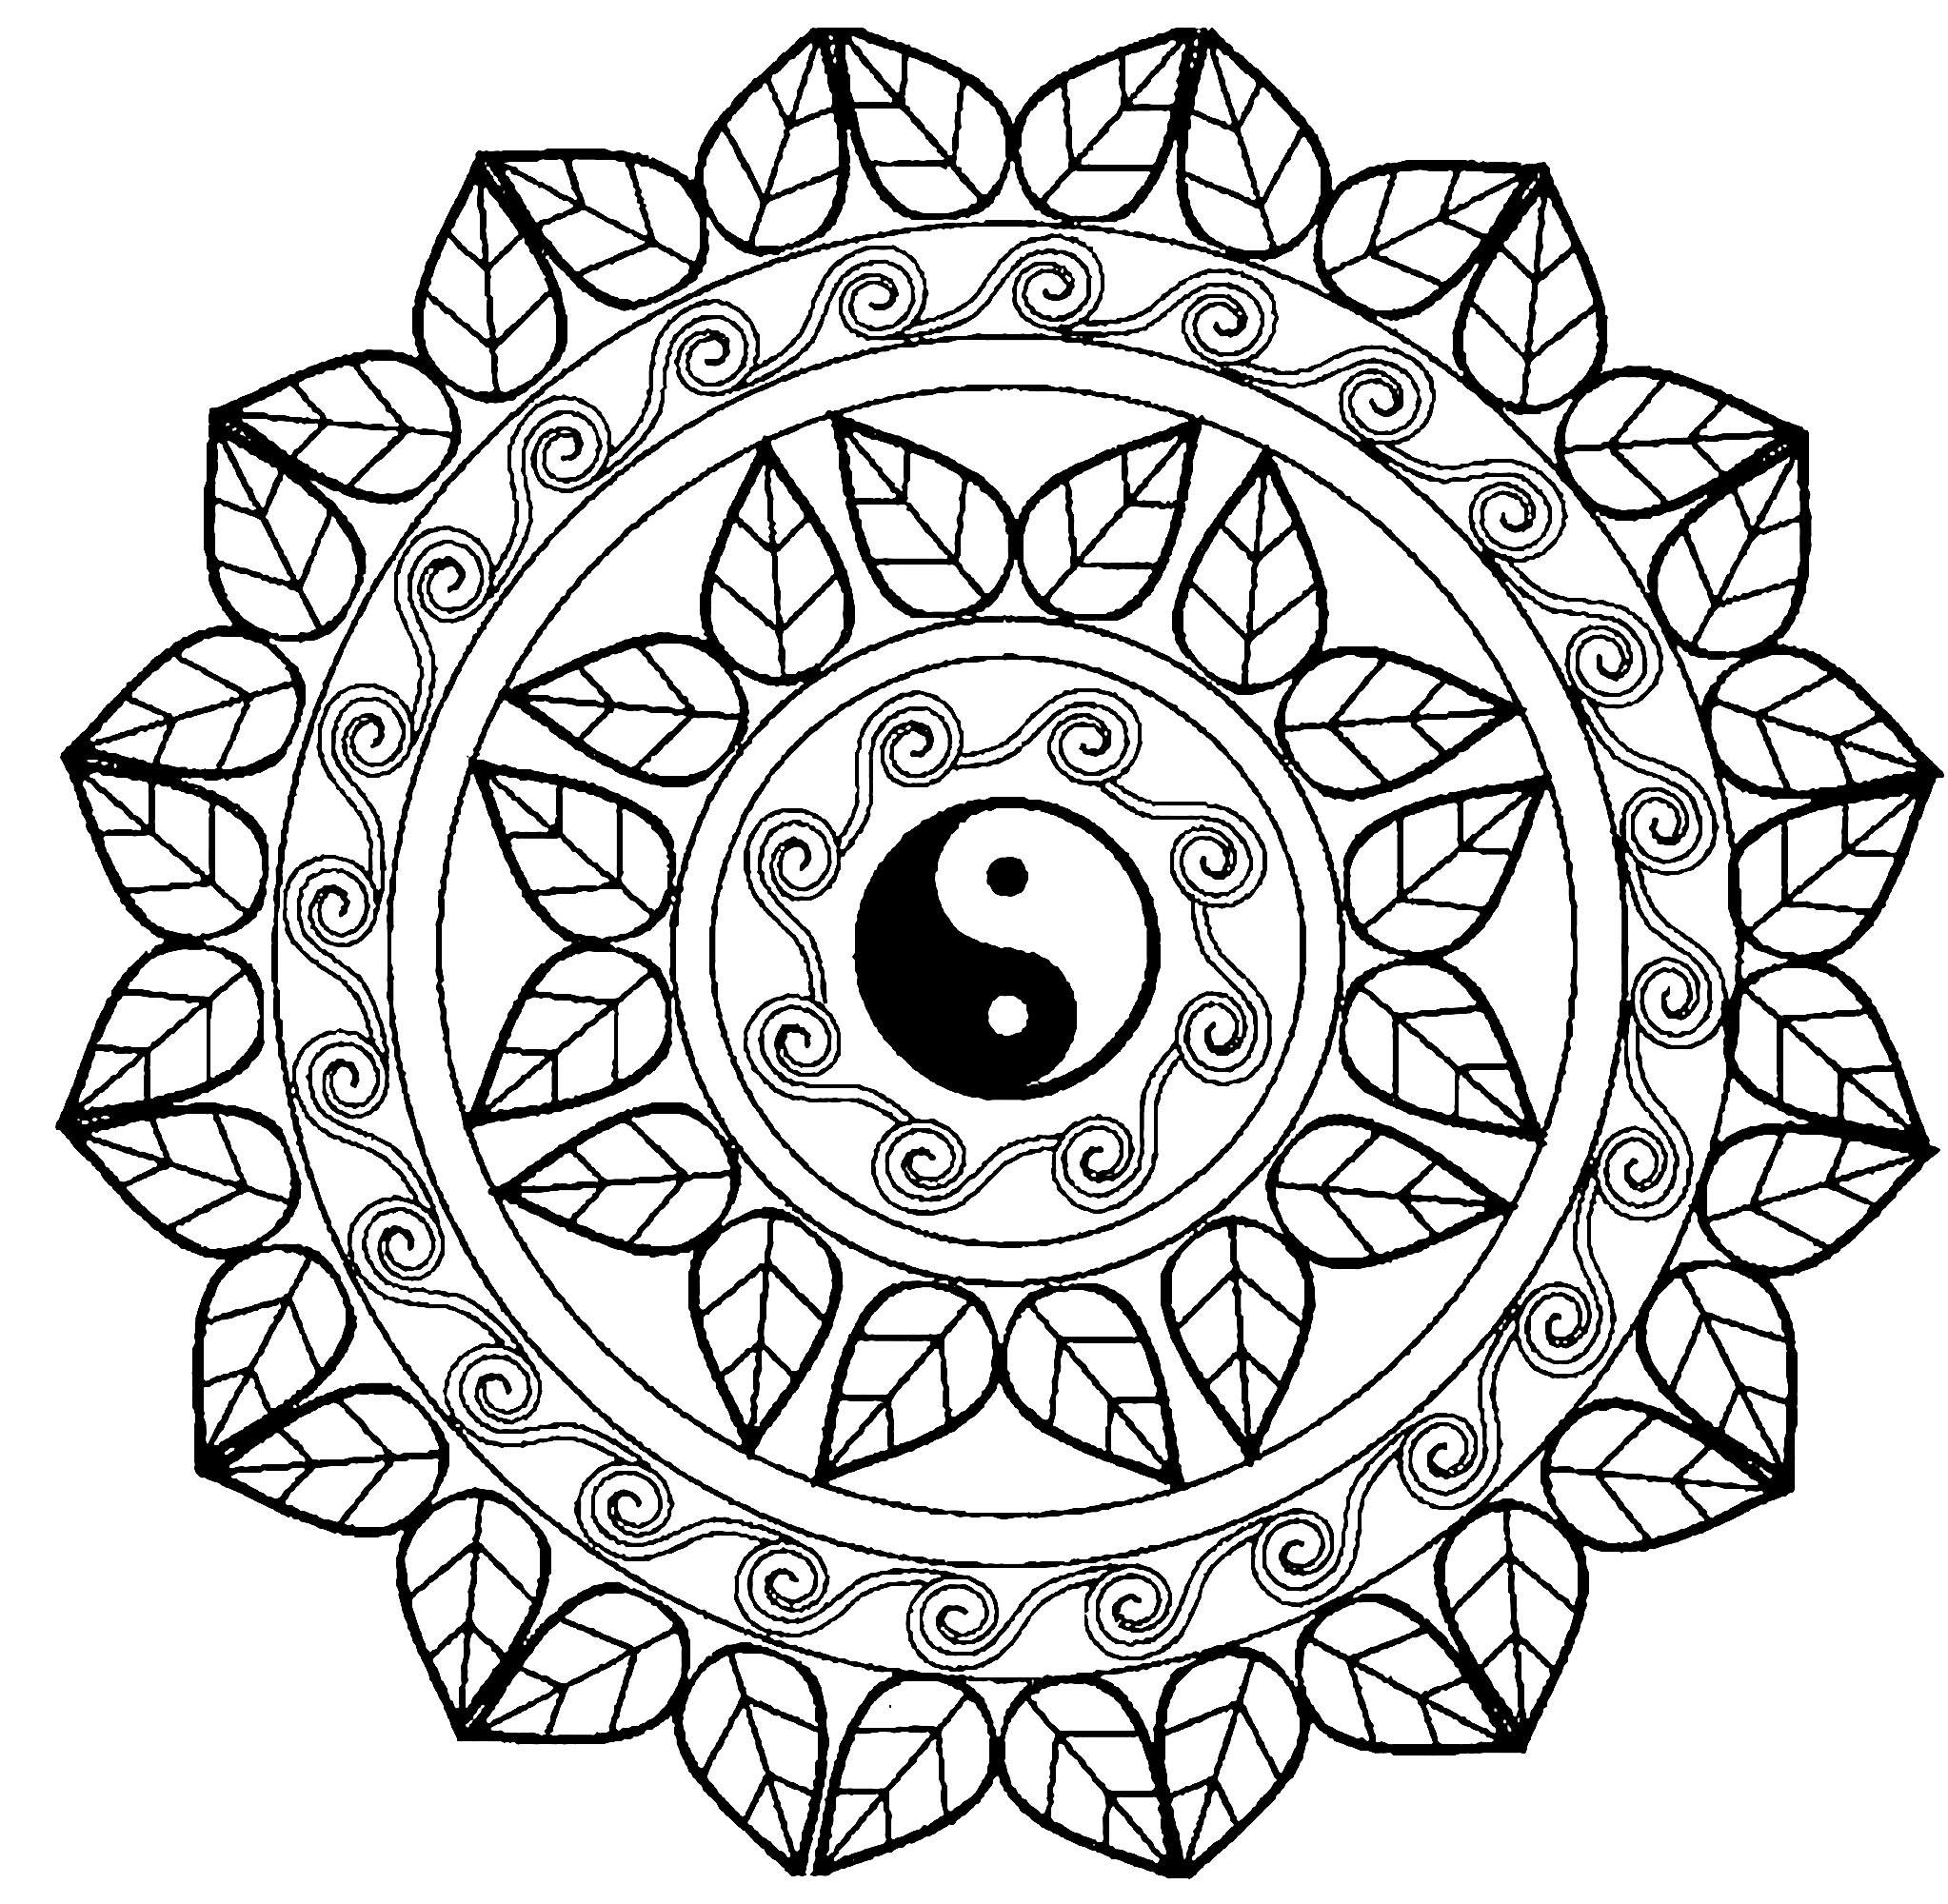 immagine Mandala per adulto da colorare Stampa Scarica in formato PDF o Condividi Stampare Scaricare · Pinterest 0 ·